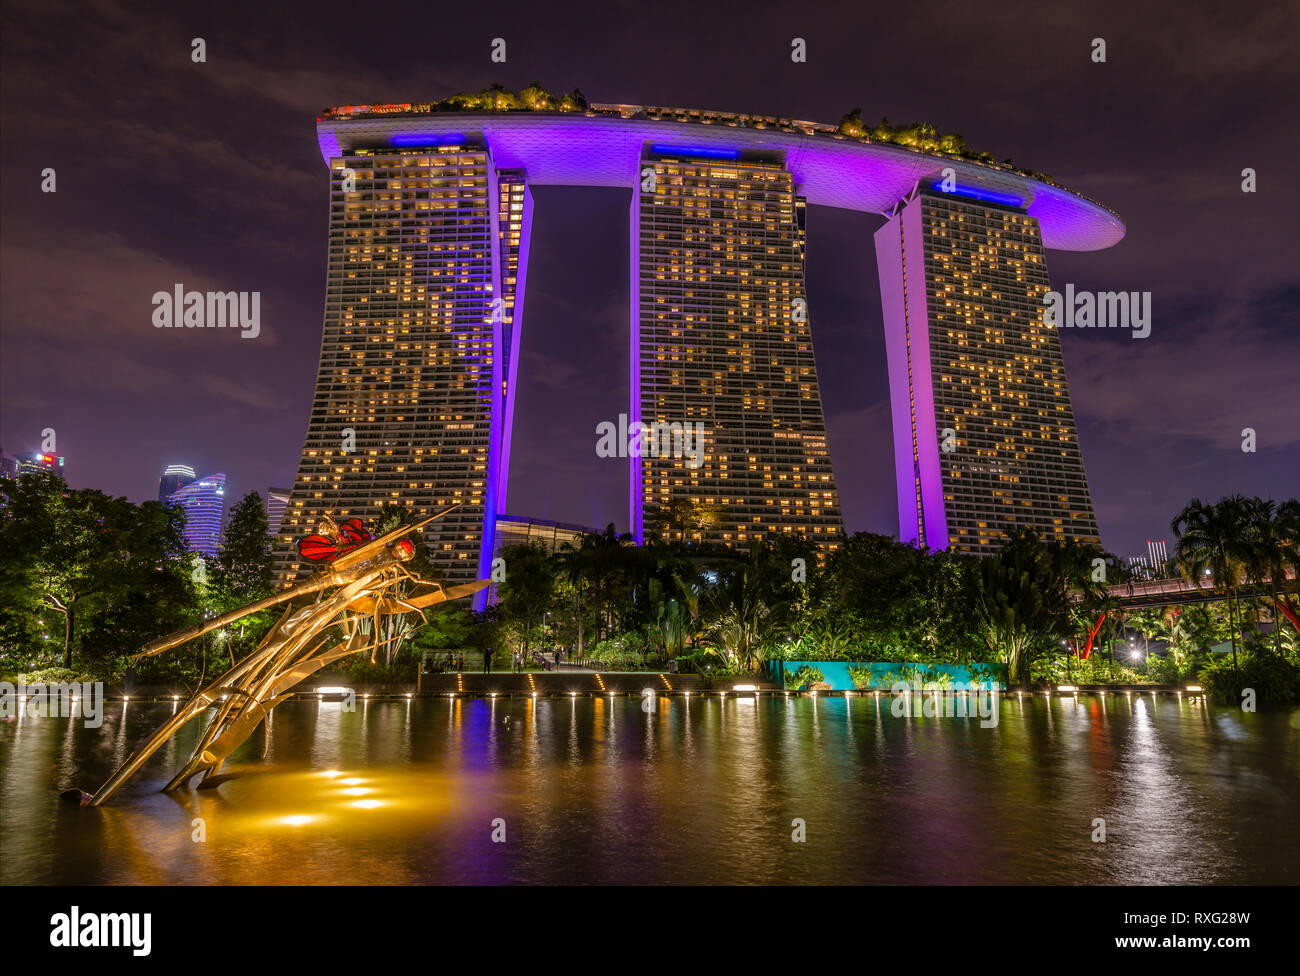 Dragonfly Skulptur in Gardens by the Bay mit dem Marina Bay Sands Hotel im Hintergrund bei Nacht, Singapur Stockfoto